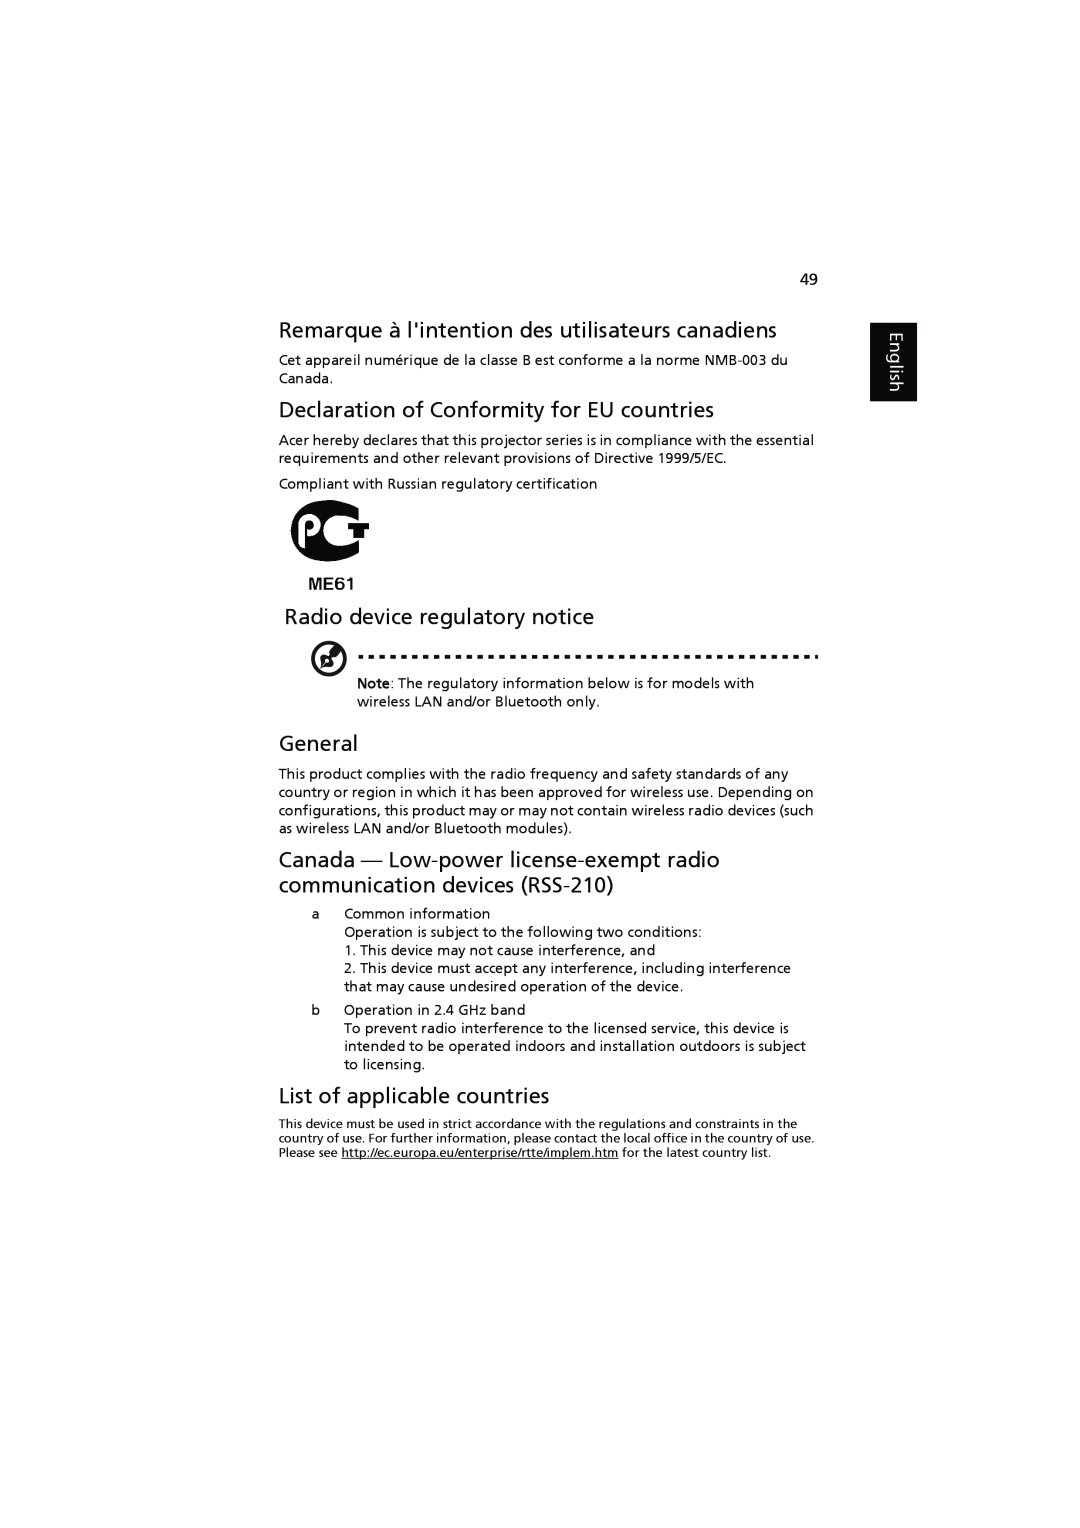 Acer P7203 Remarque à lintention des utilisateurs canadiens, Declaration of Conformity for EU countries, General, English 